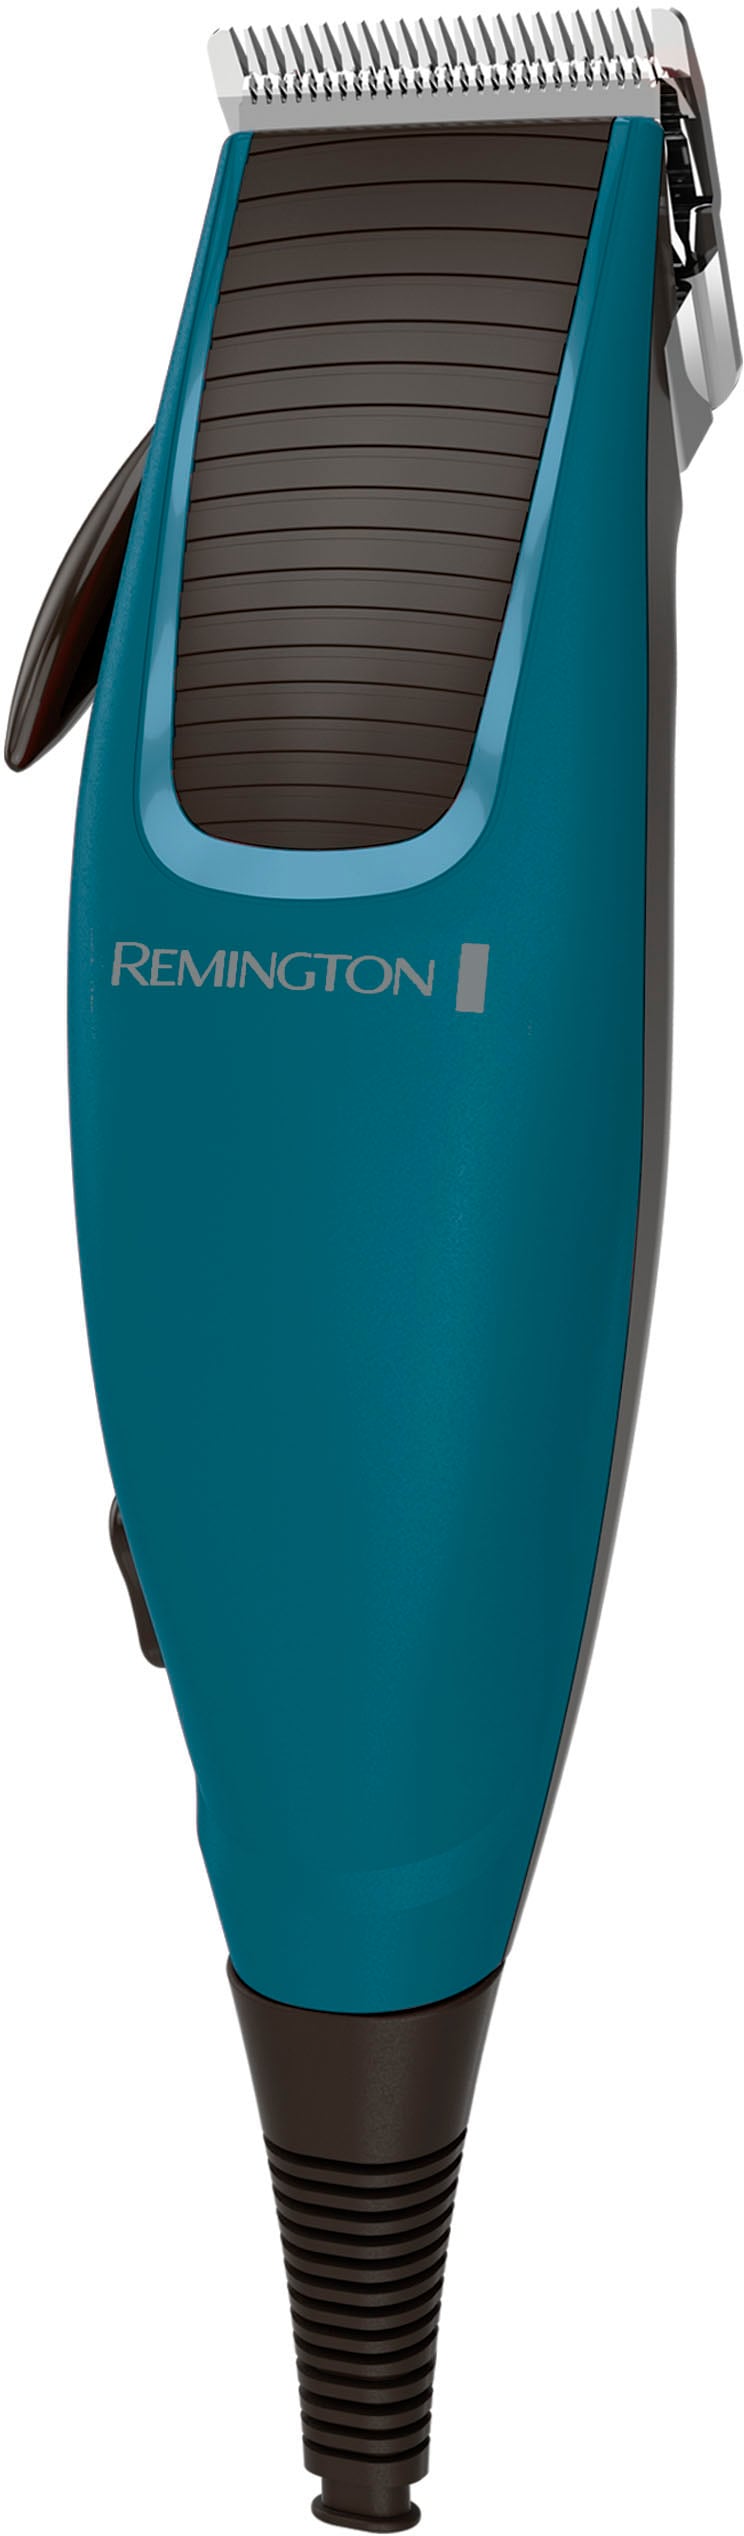 Auswahl Remington Haarschneider »Apprentice HC5020«, 5 viel Aufsätze, Zubehör kaufen mit